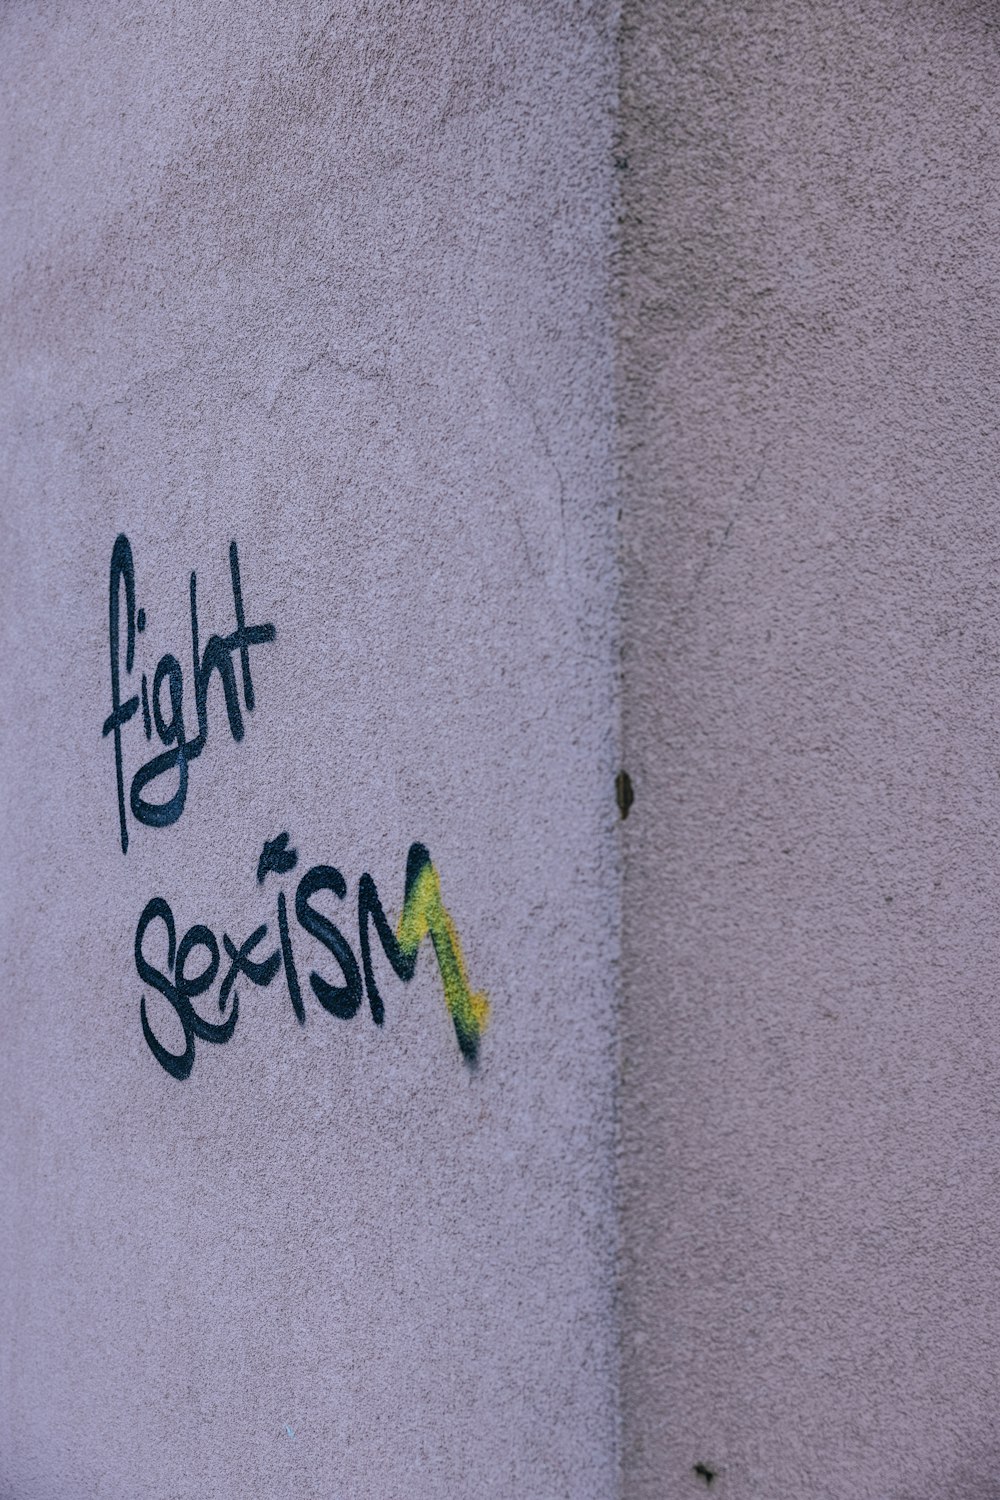 grafite na lateral de um prédio que diz lutar contra o machismo